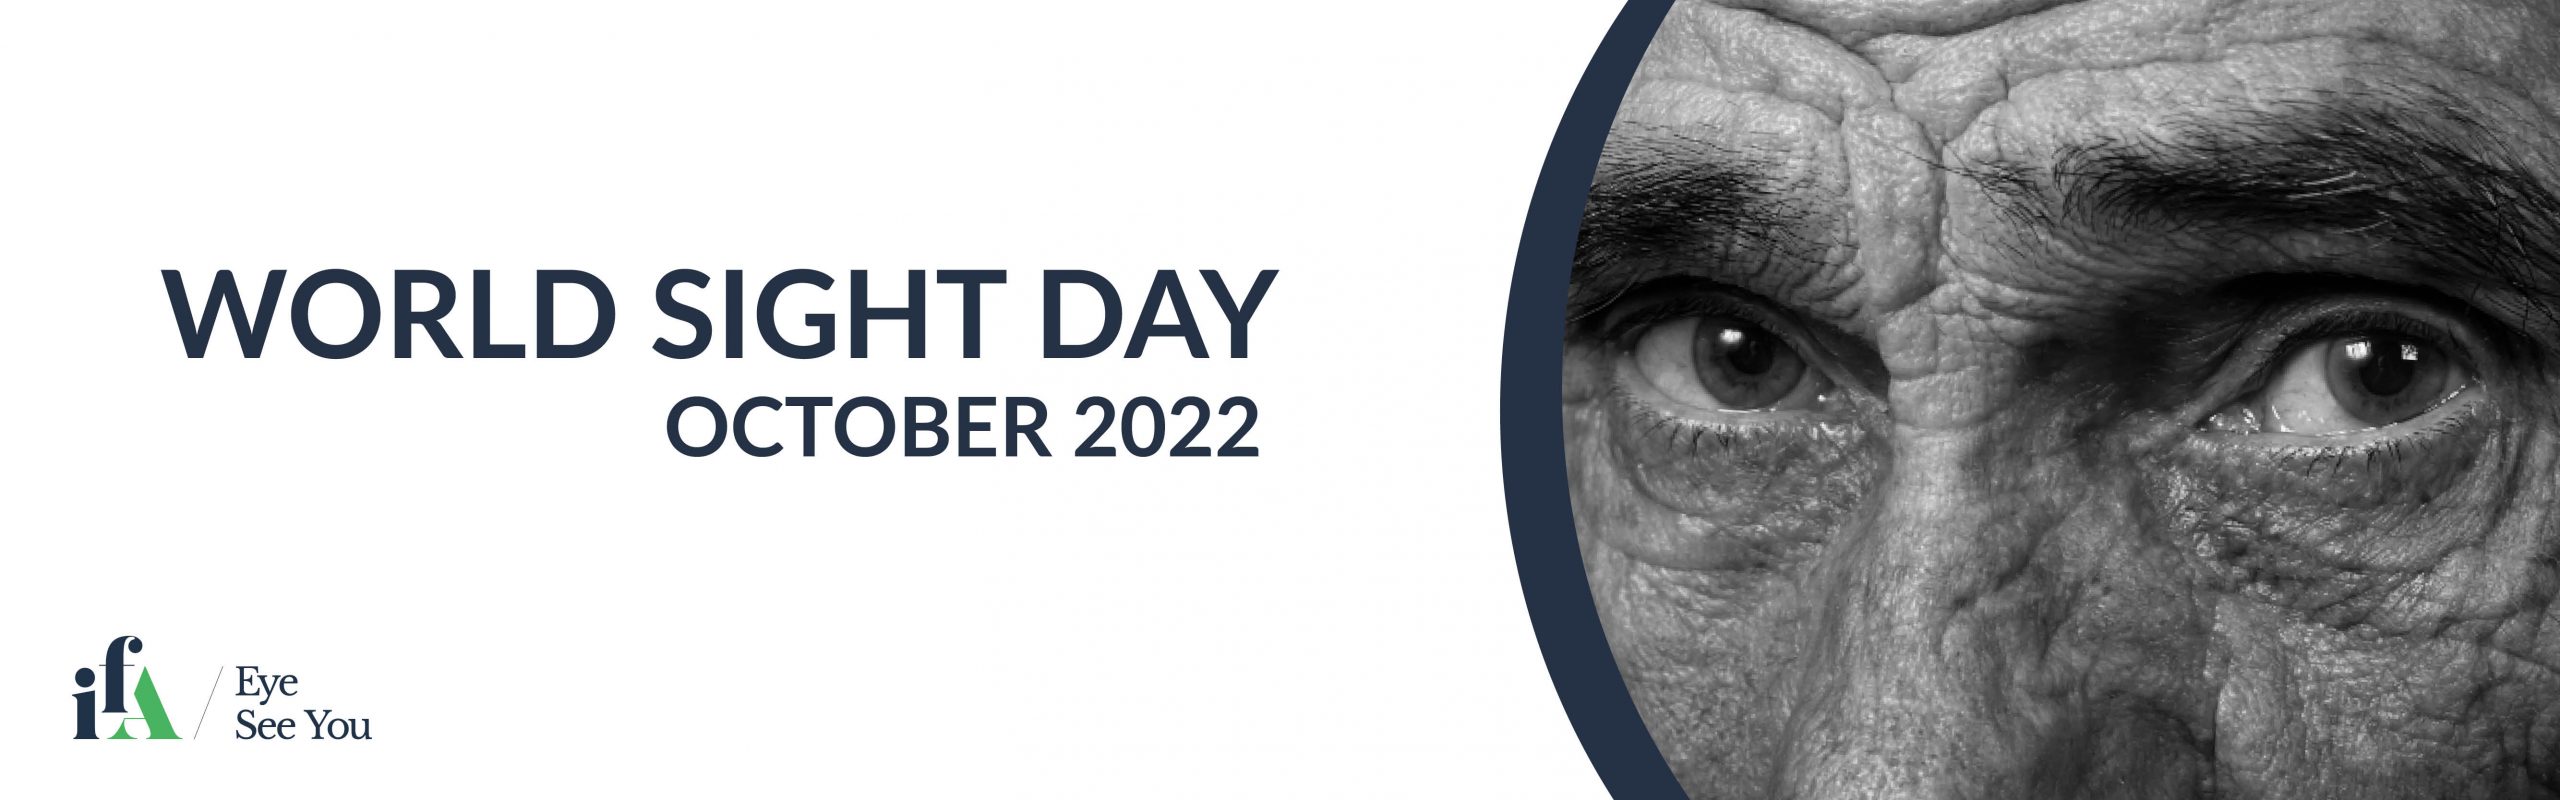 World Sight Day Biosimilars web banner